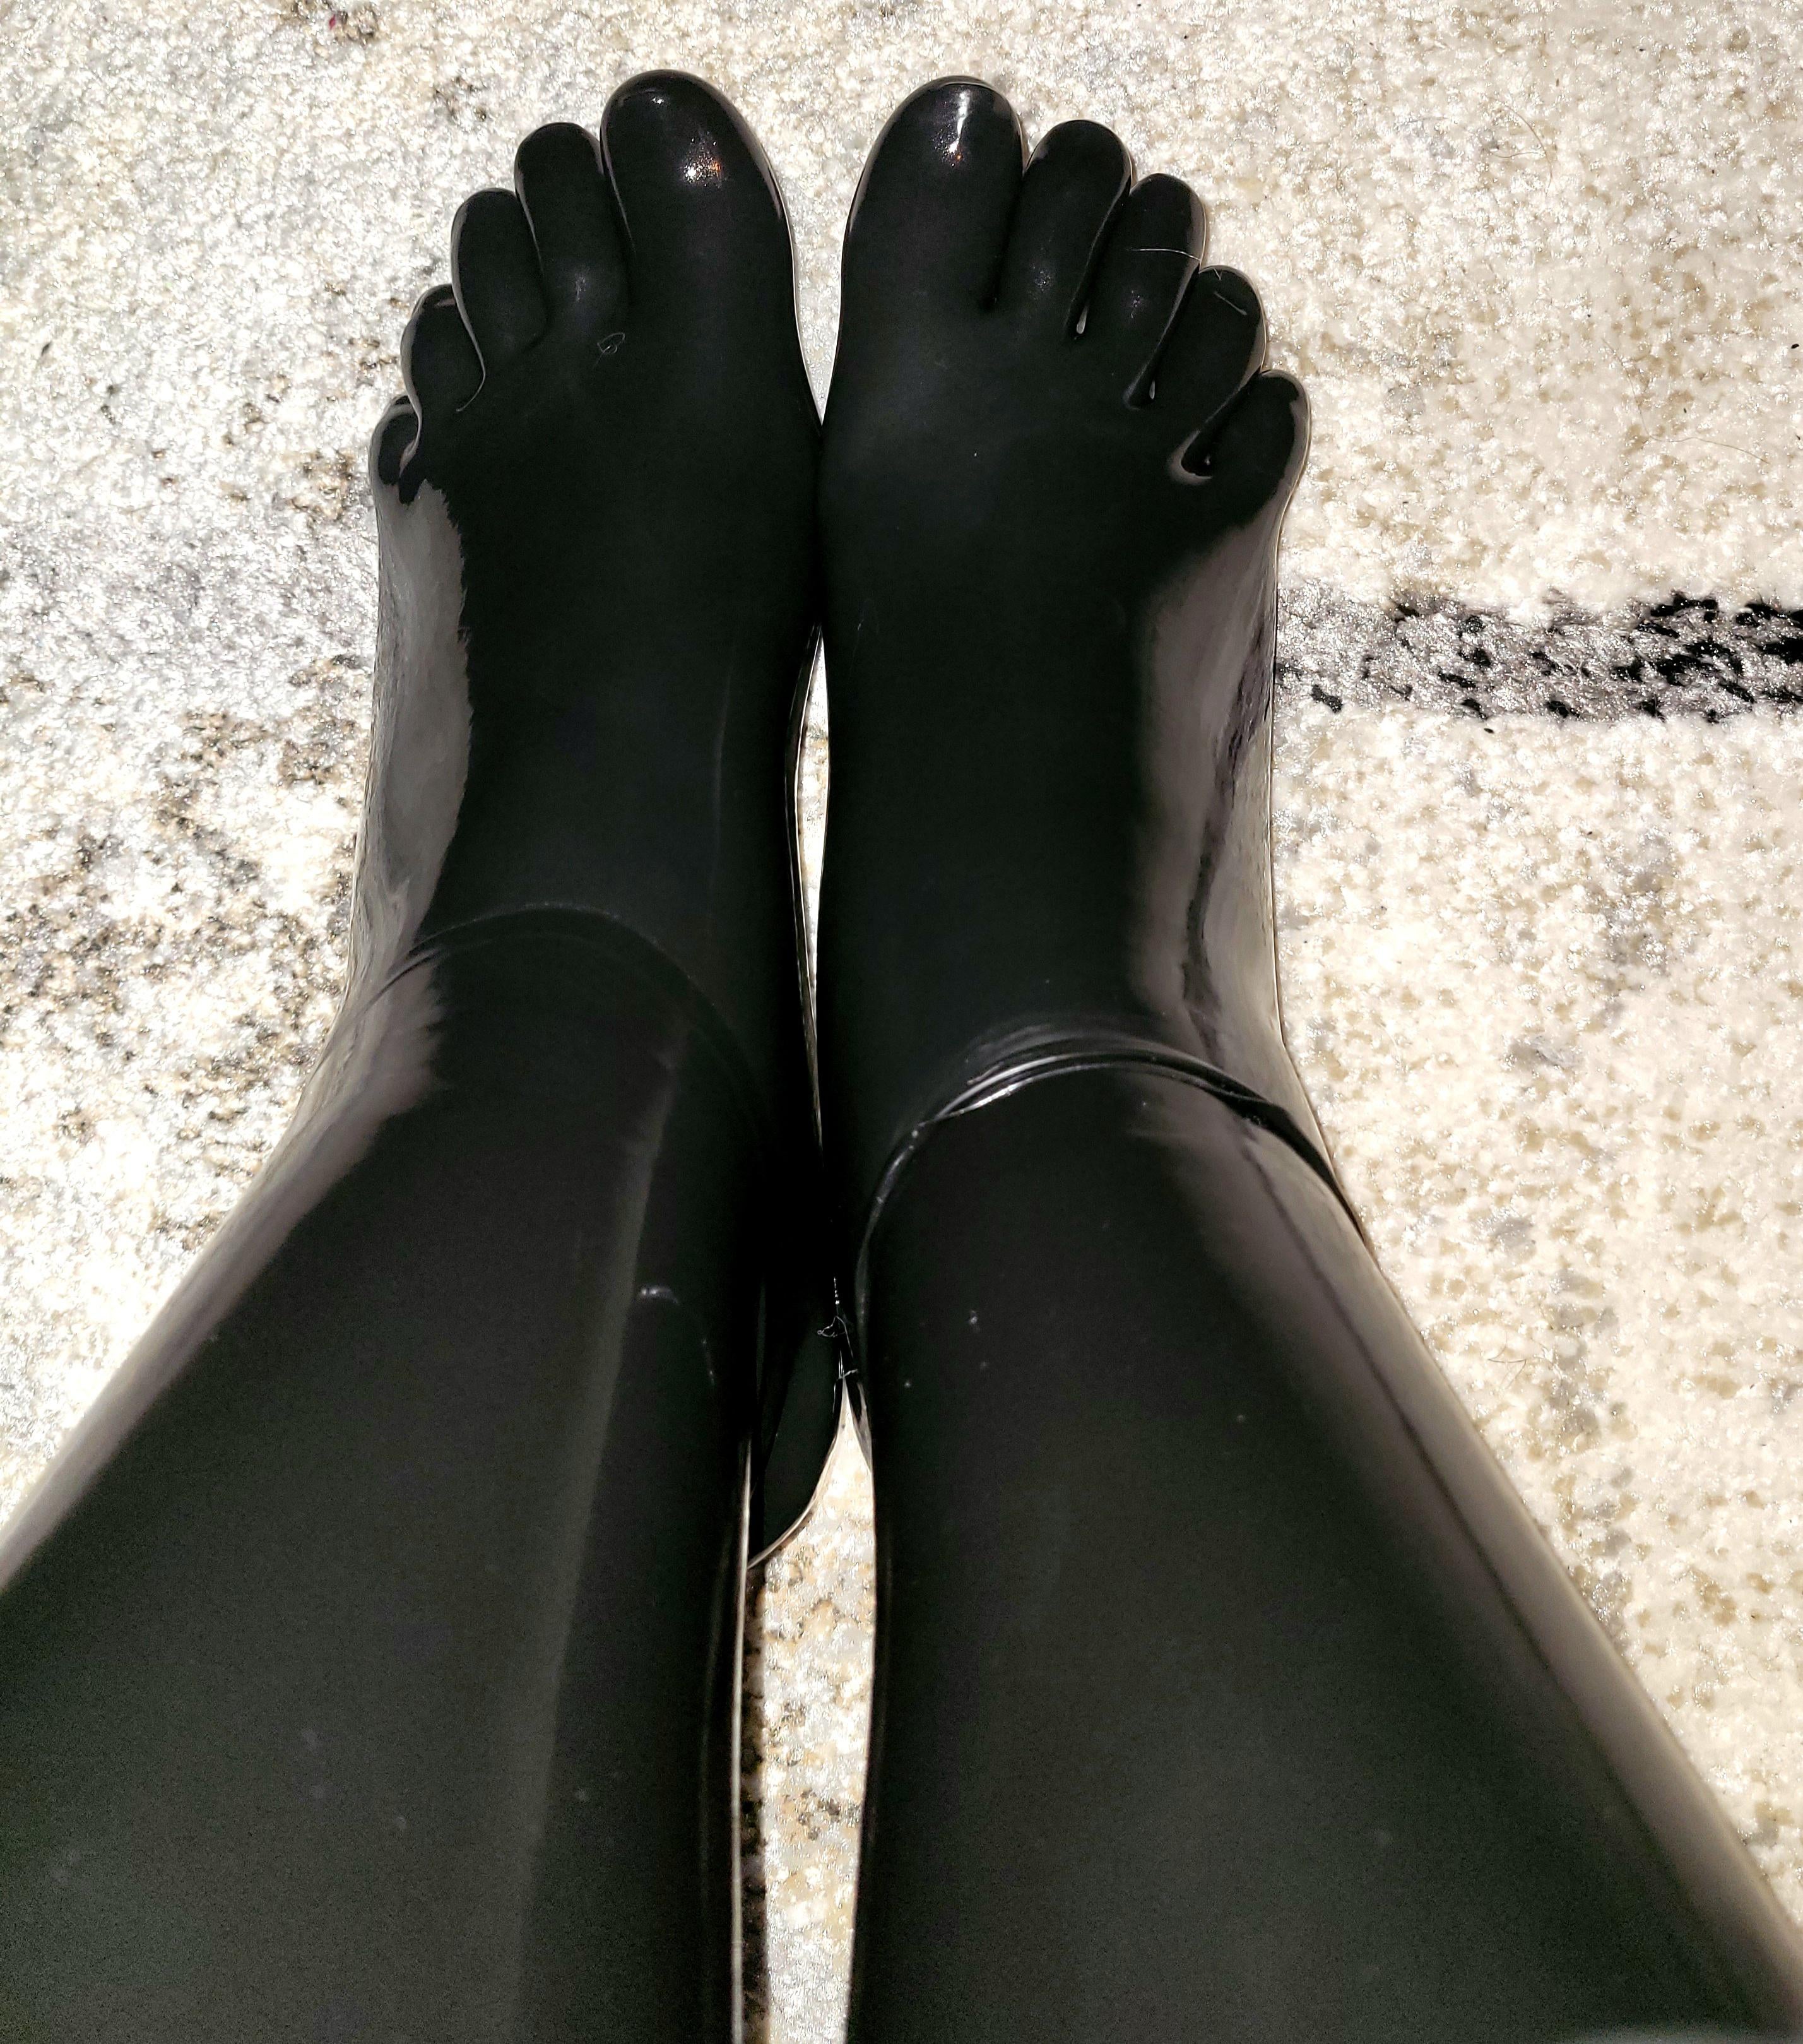 Toe Socks And Shiny Legs 🔥